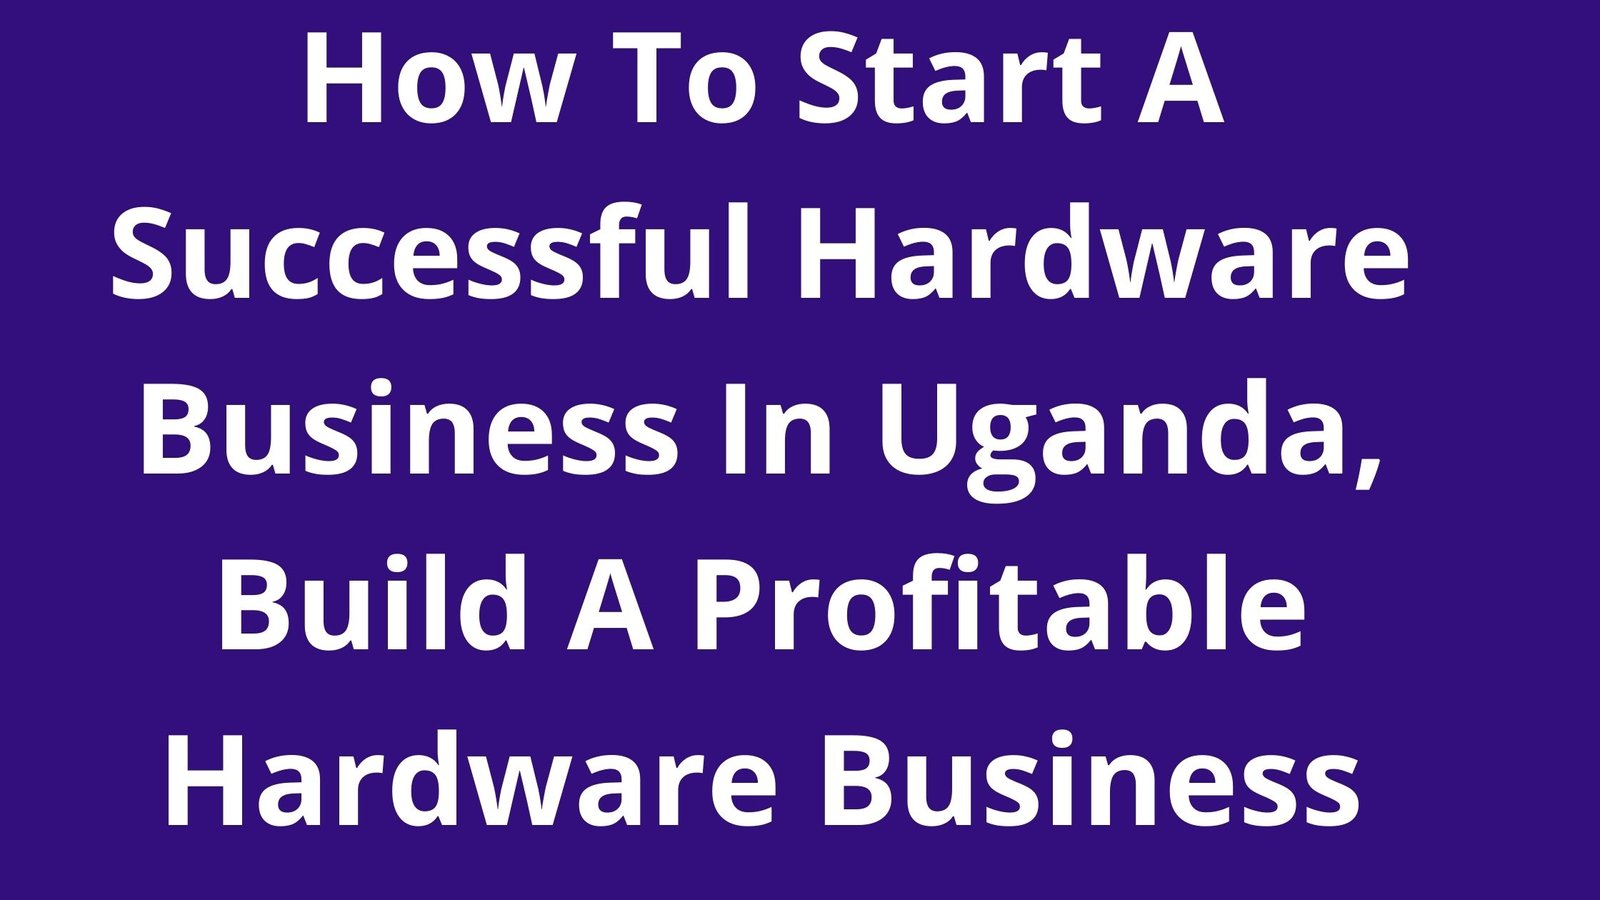 hardware business plan in uganda pdf